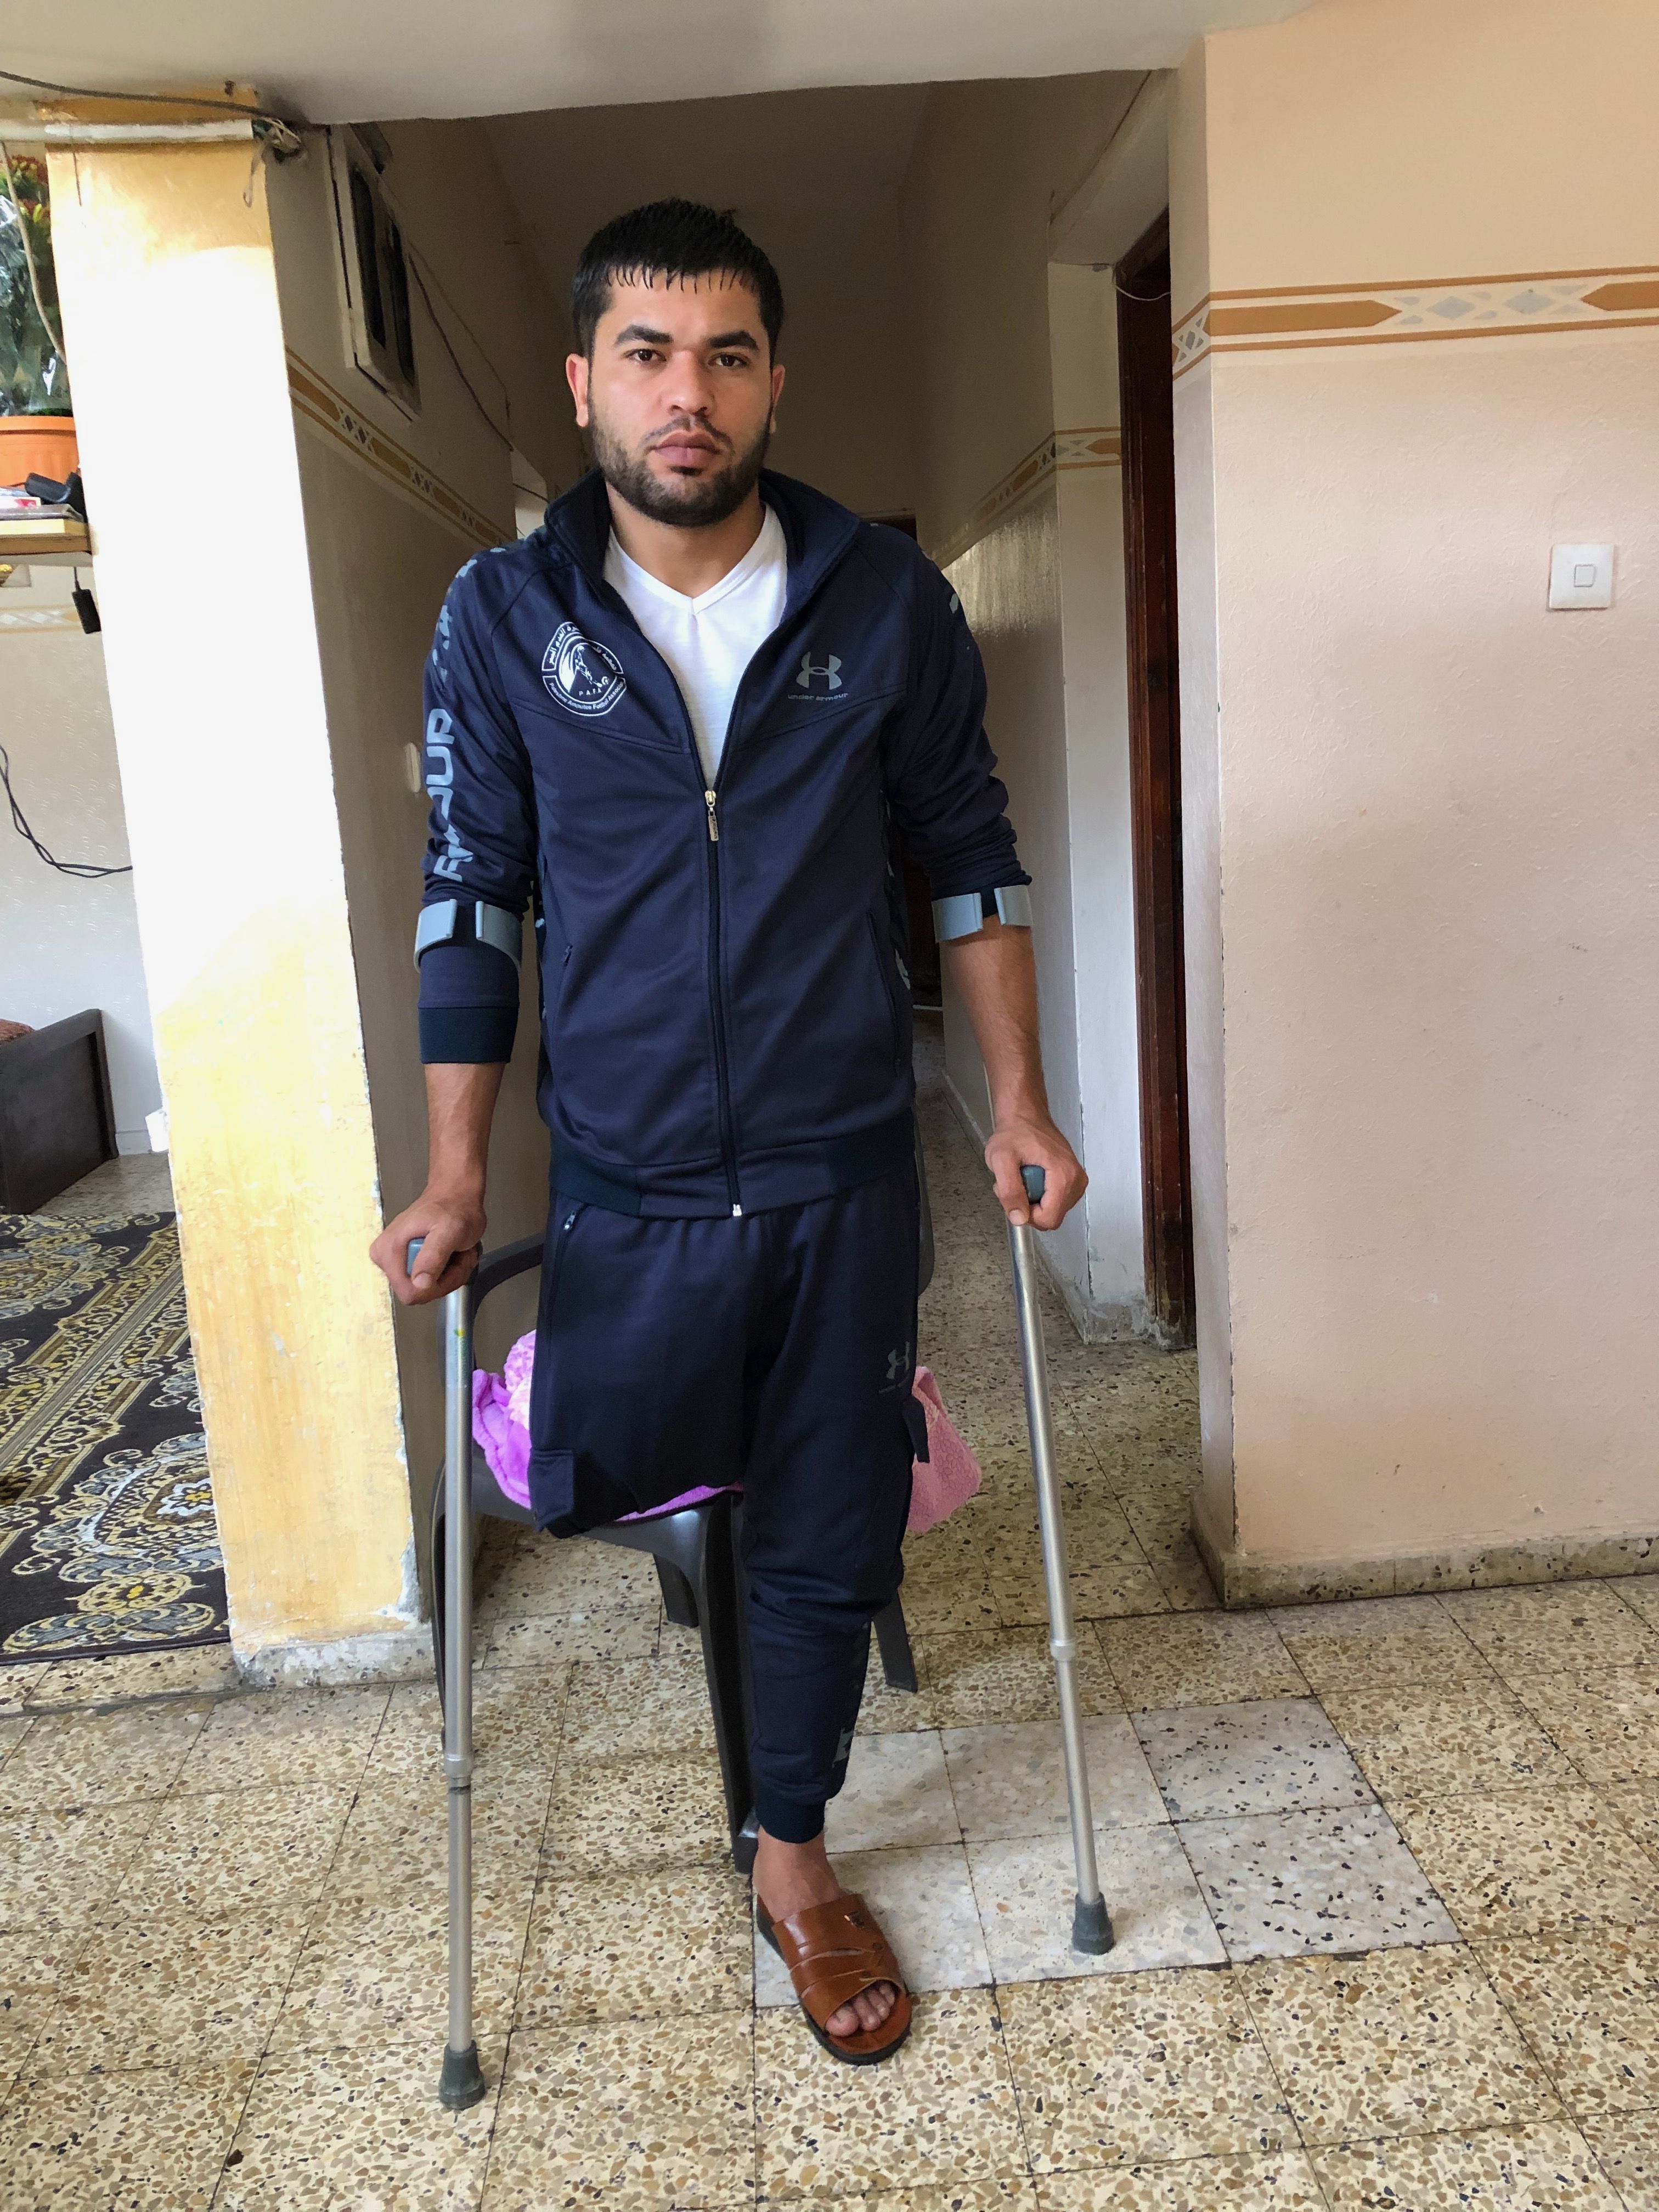 فادي شقورة، من مخيم جباليا (غزة)، أُصيبَ خلال مظاهرة في شهر شباط/فبراير 2018 © - مكتب الأمم المتحدة لتنسيق الشؤون الإنسانية